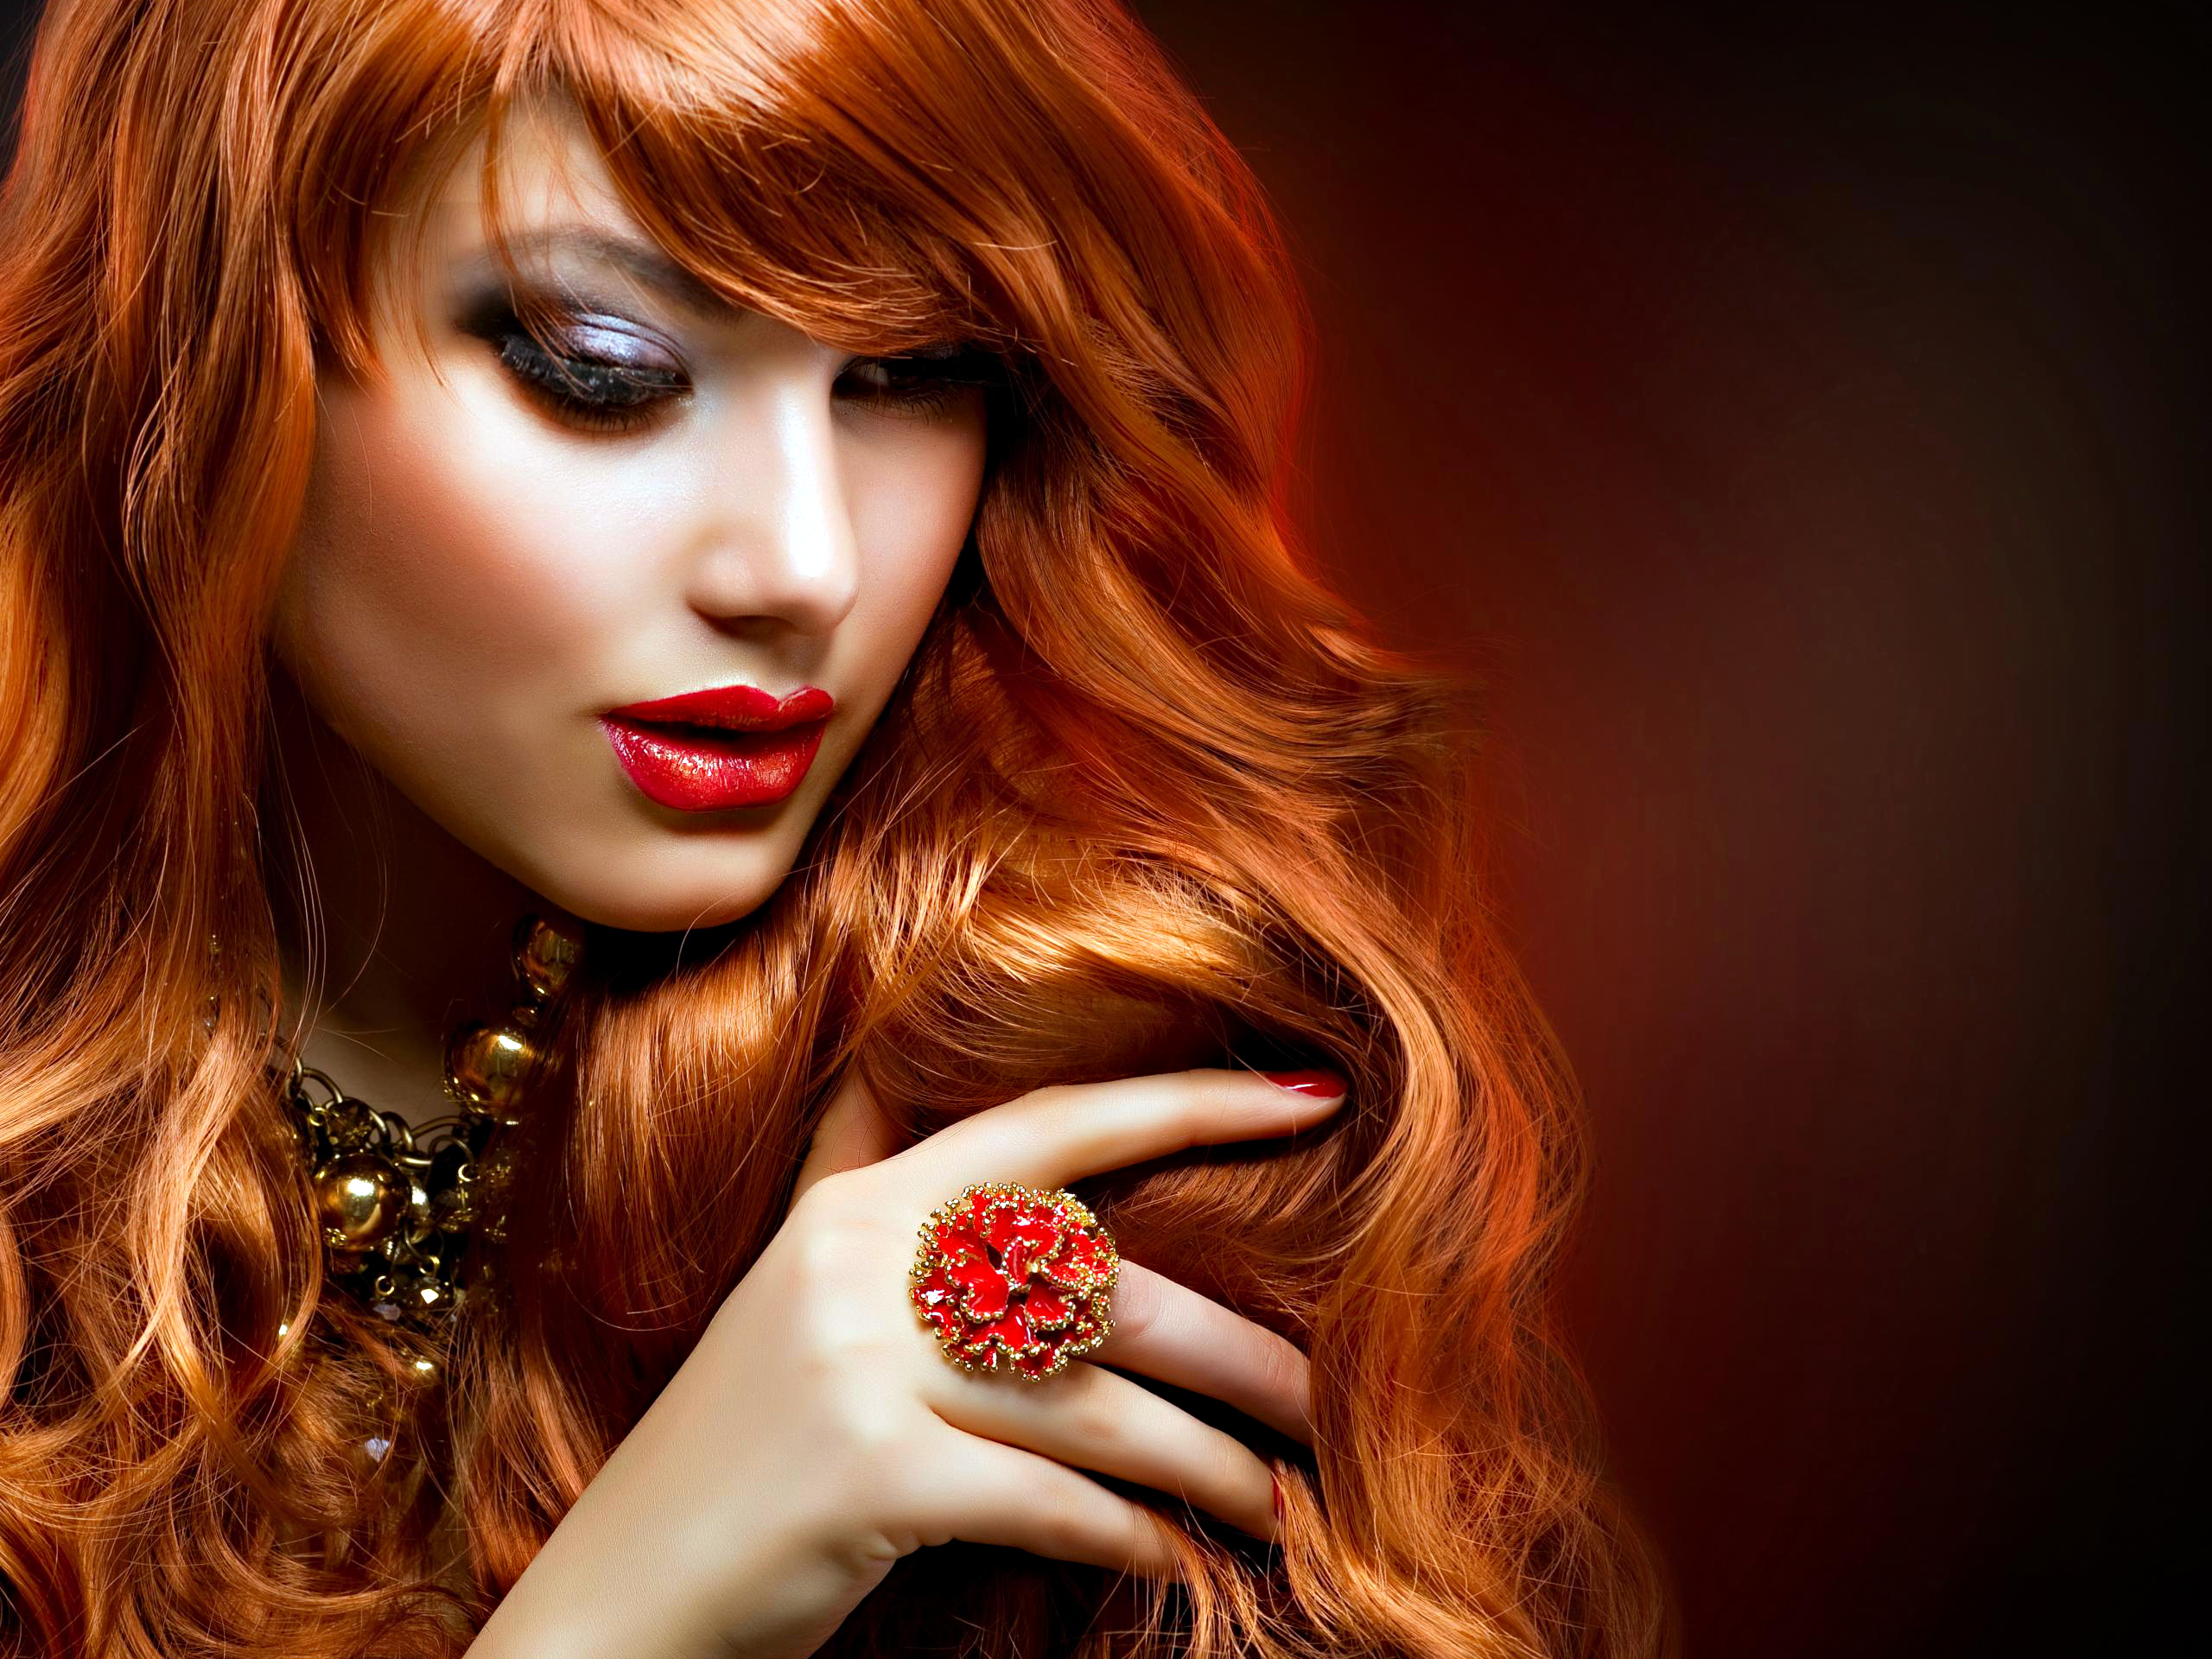 schönheitssalon bilder wallpaper,haar,rote haare,haare färben,lippe,rot